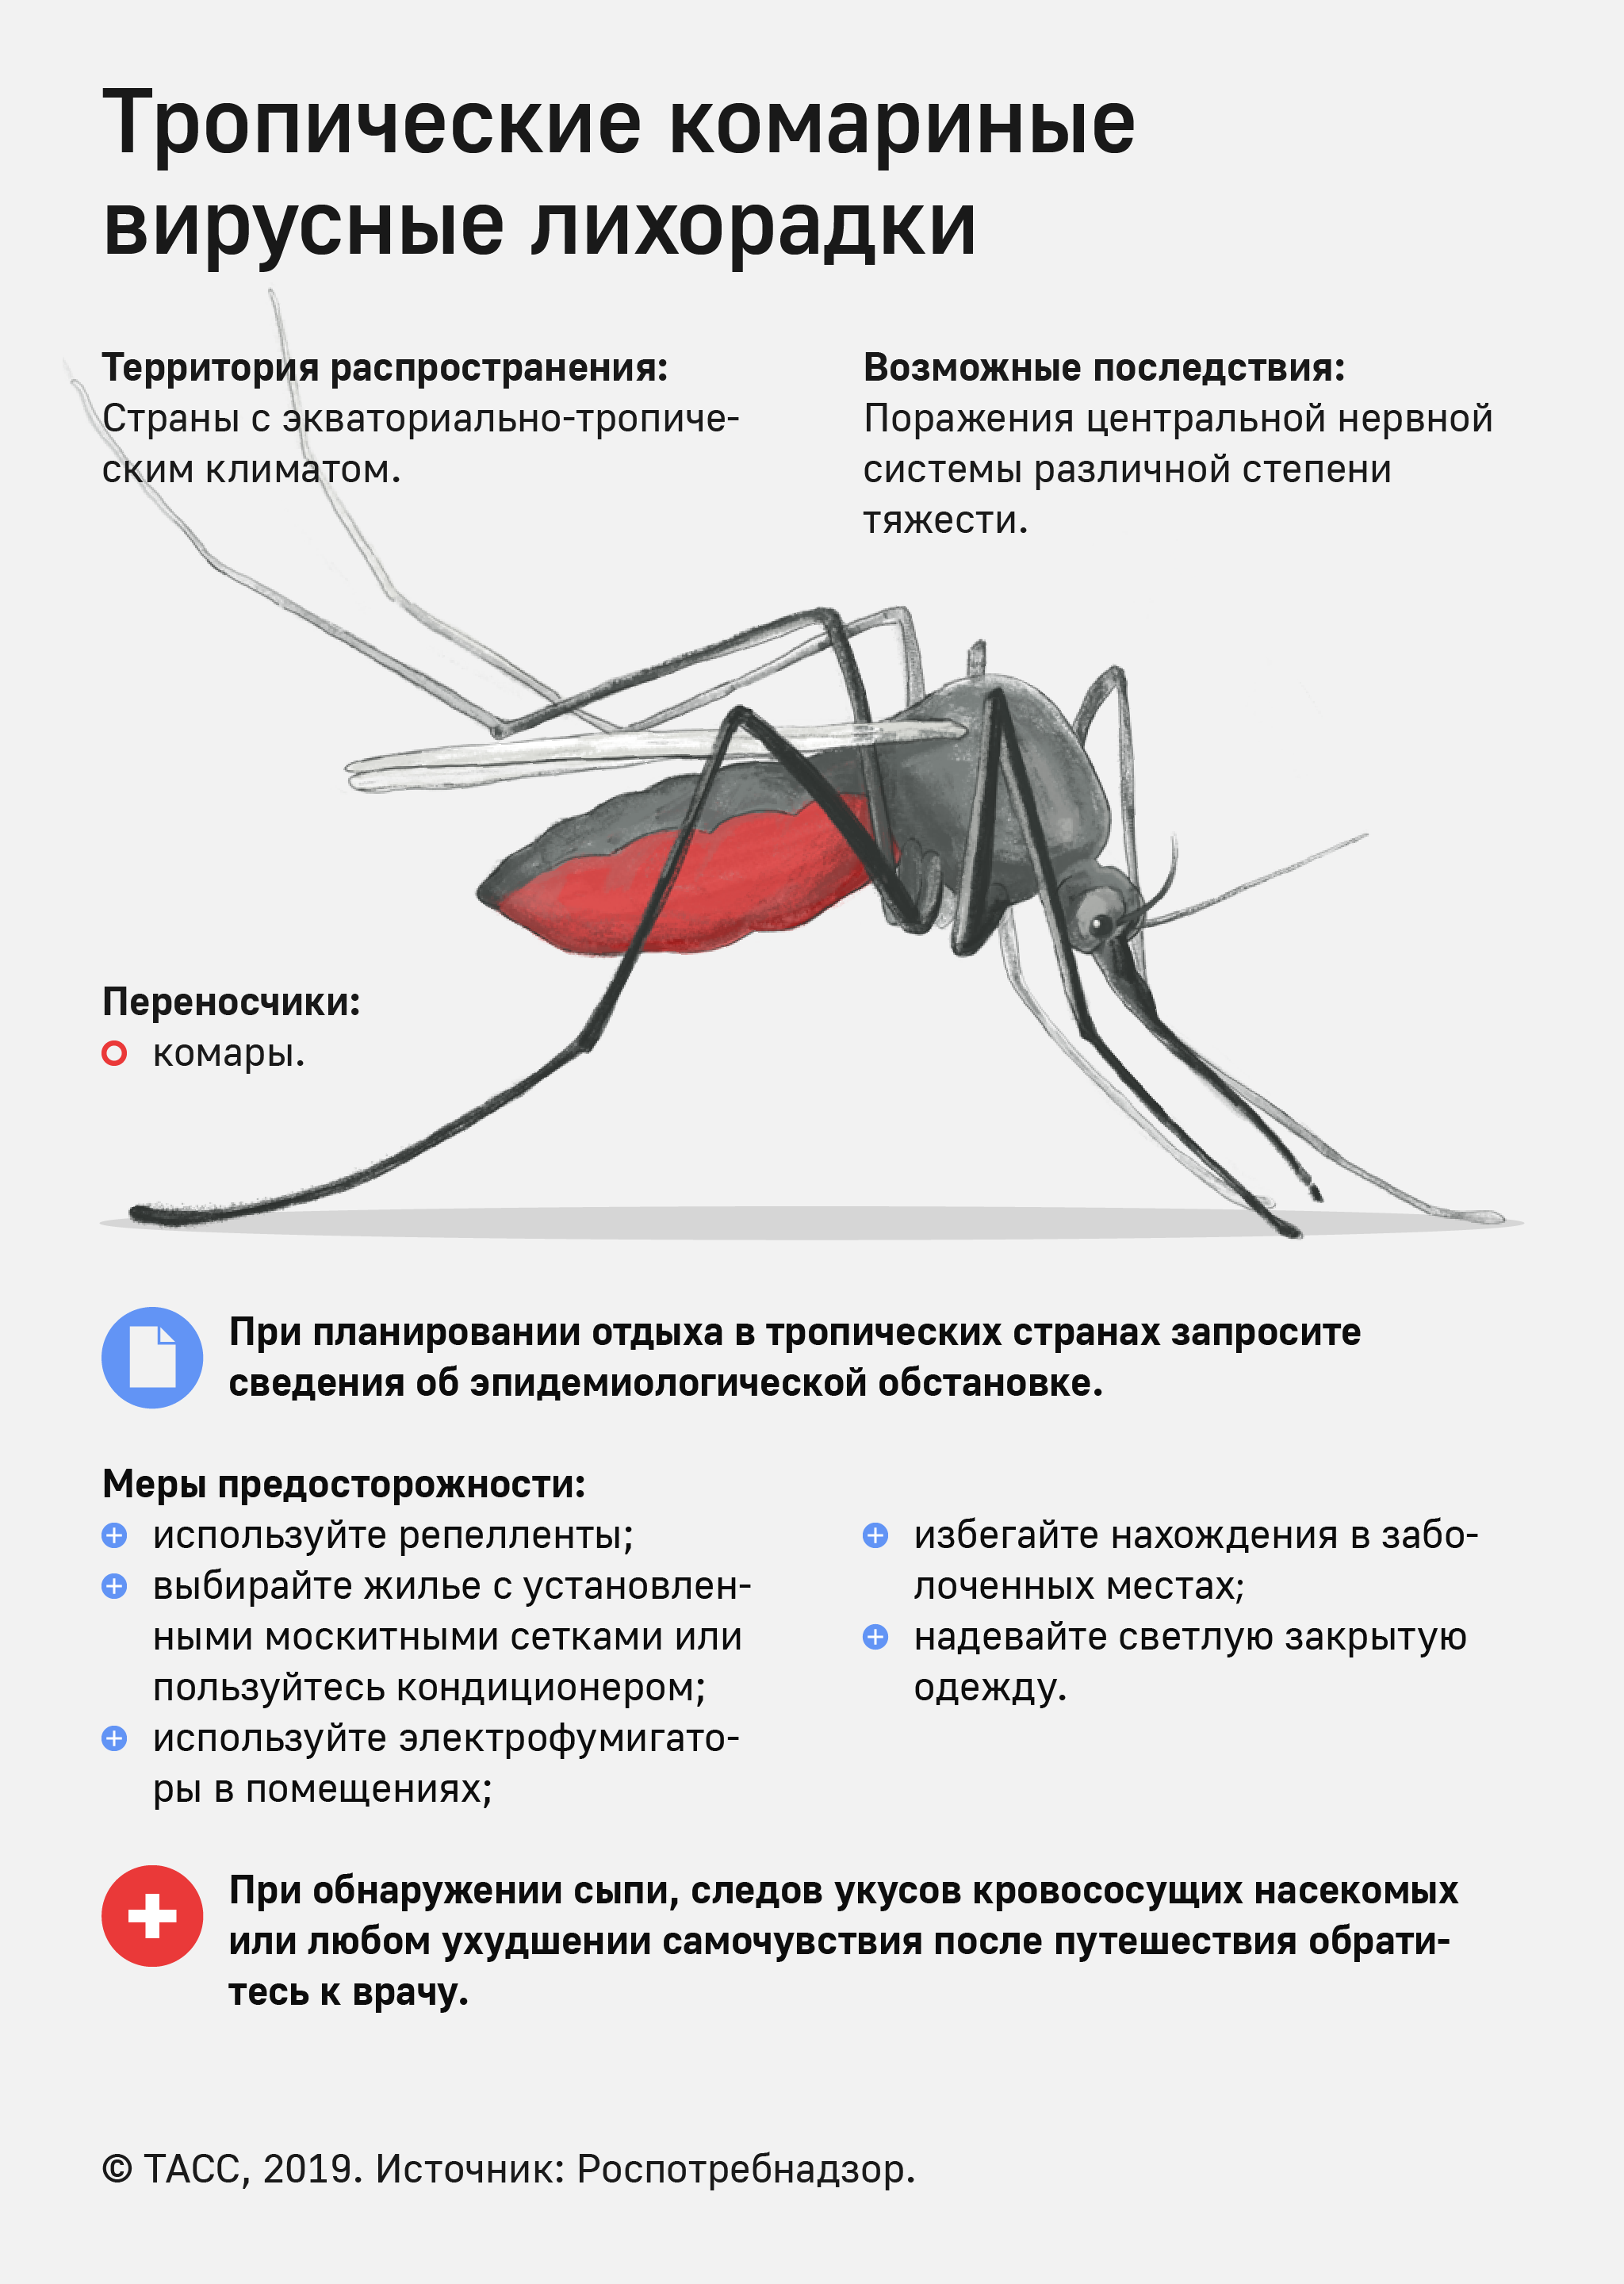 Какие инфекции передаются через укусы кровососущих насекомых. Малярийный комар болезнь. Профилактика от малярийного комара. Памятка по профилактике малярии.